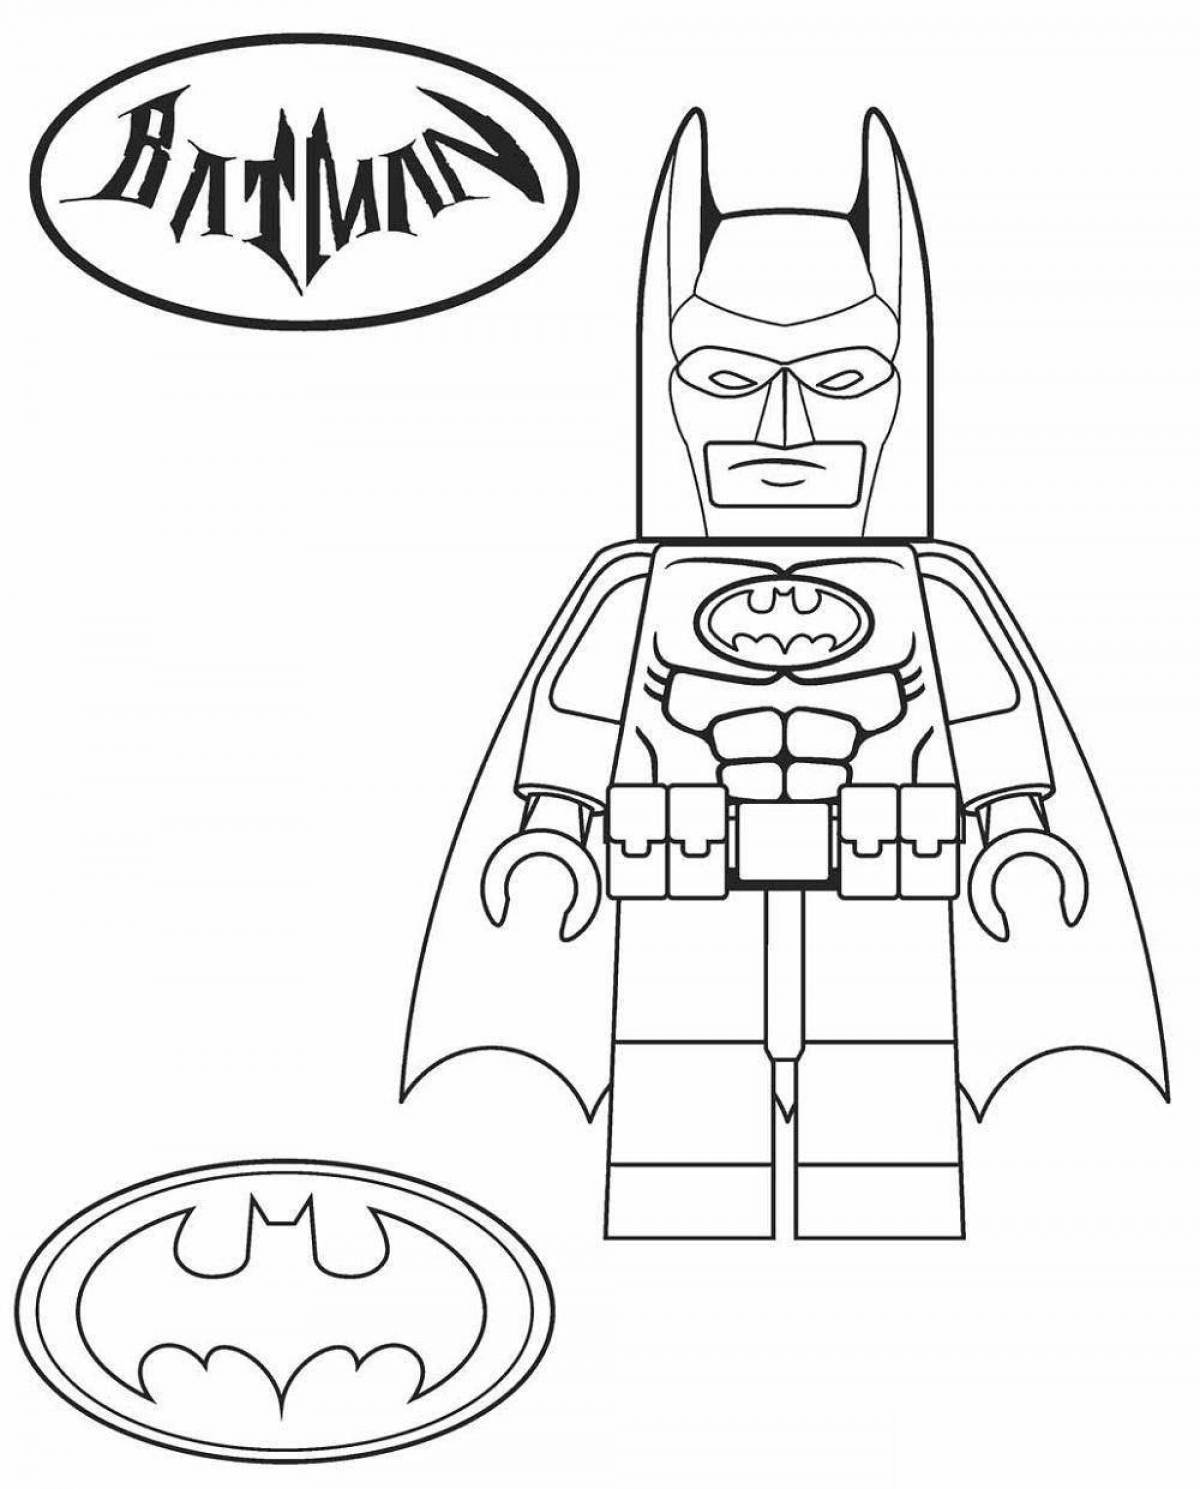 Charming lego batman coloring book